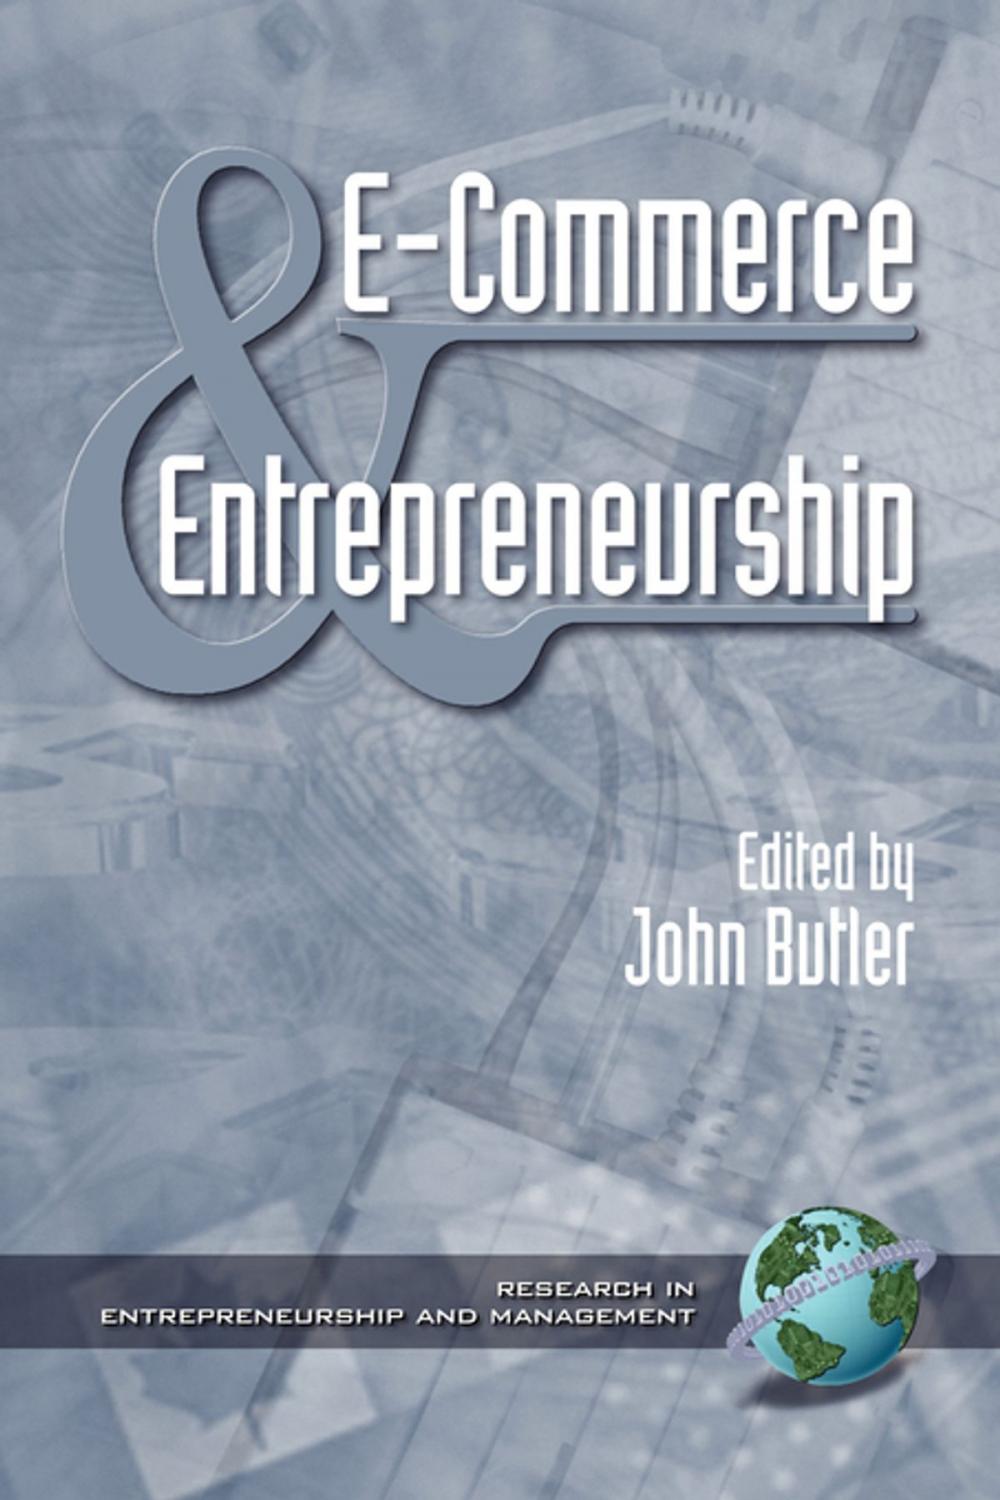 Big bigCover of ECommerce & Entrepreneurship